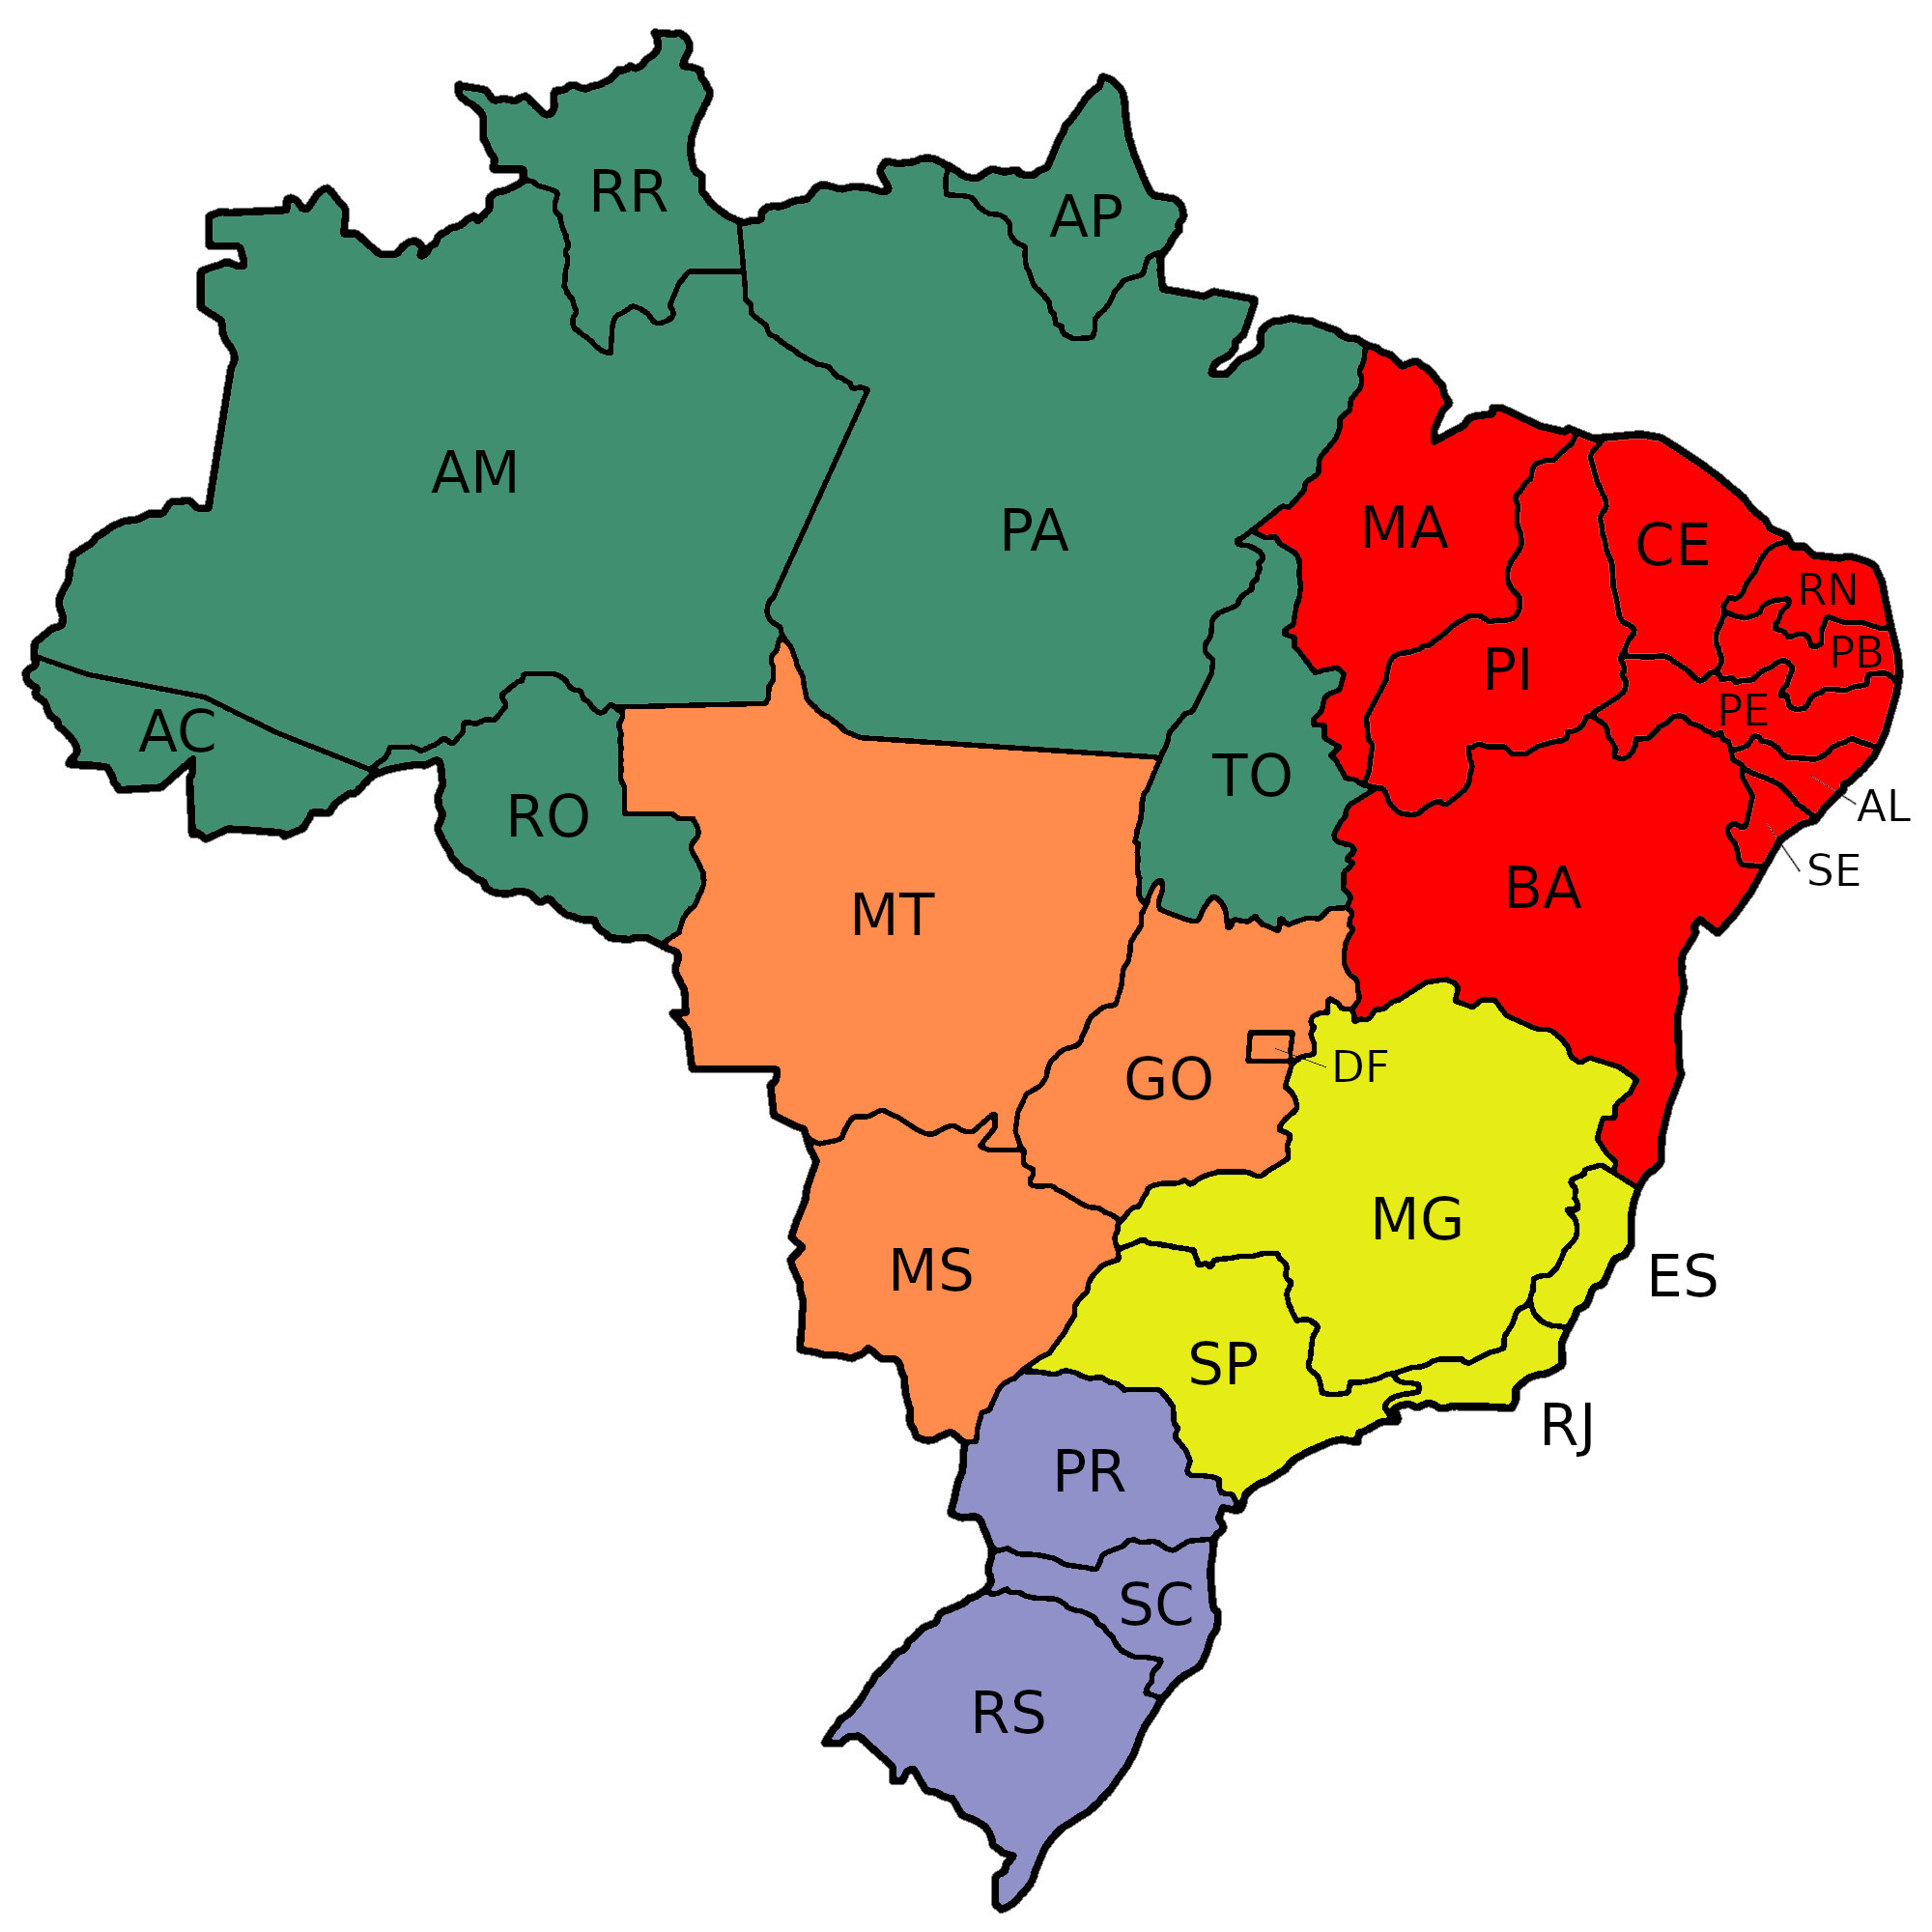 A Proclamação da República no Brasil: Um Marco Histórico em 15 de Novembro